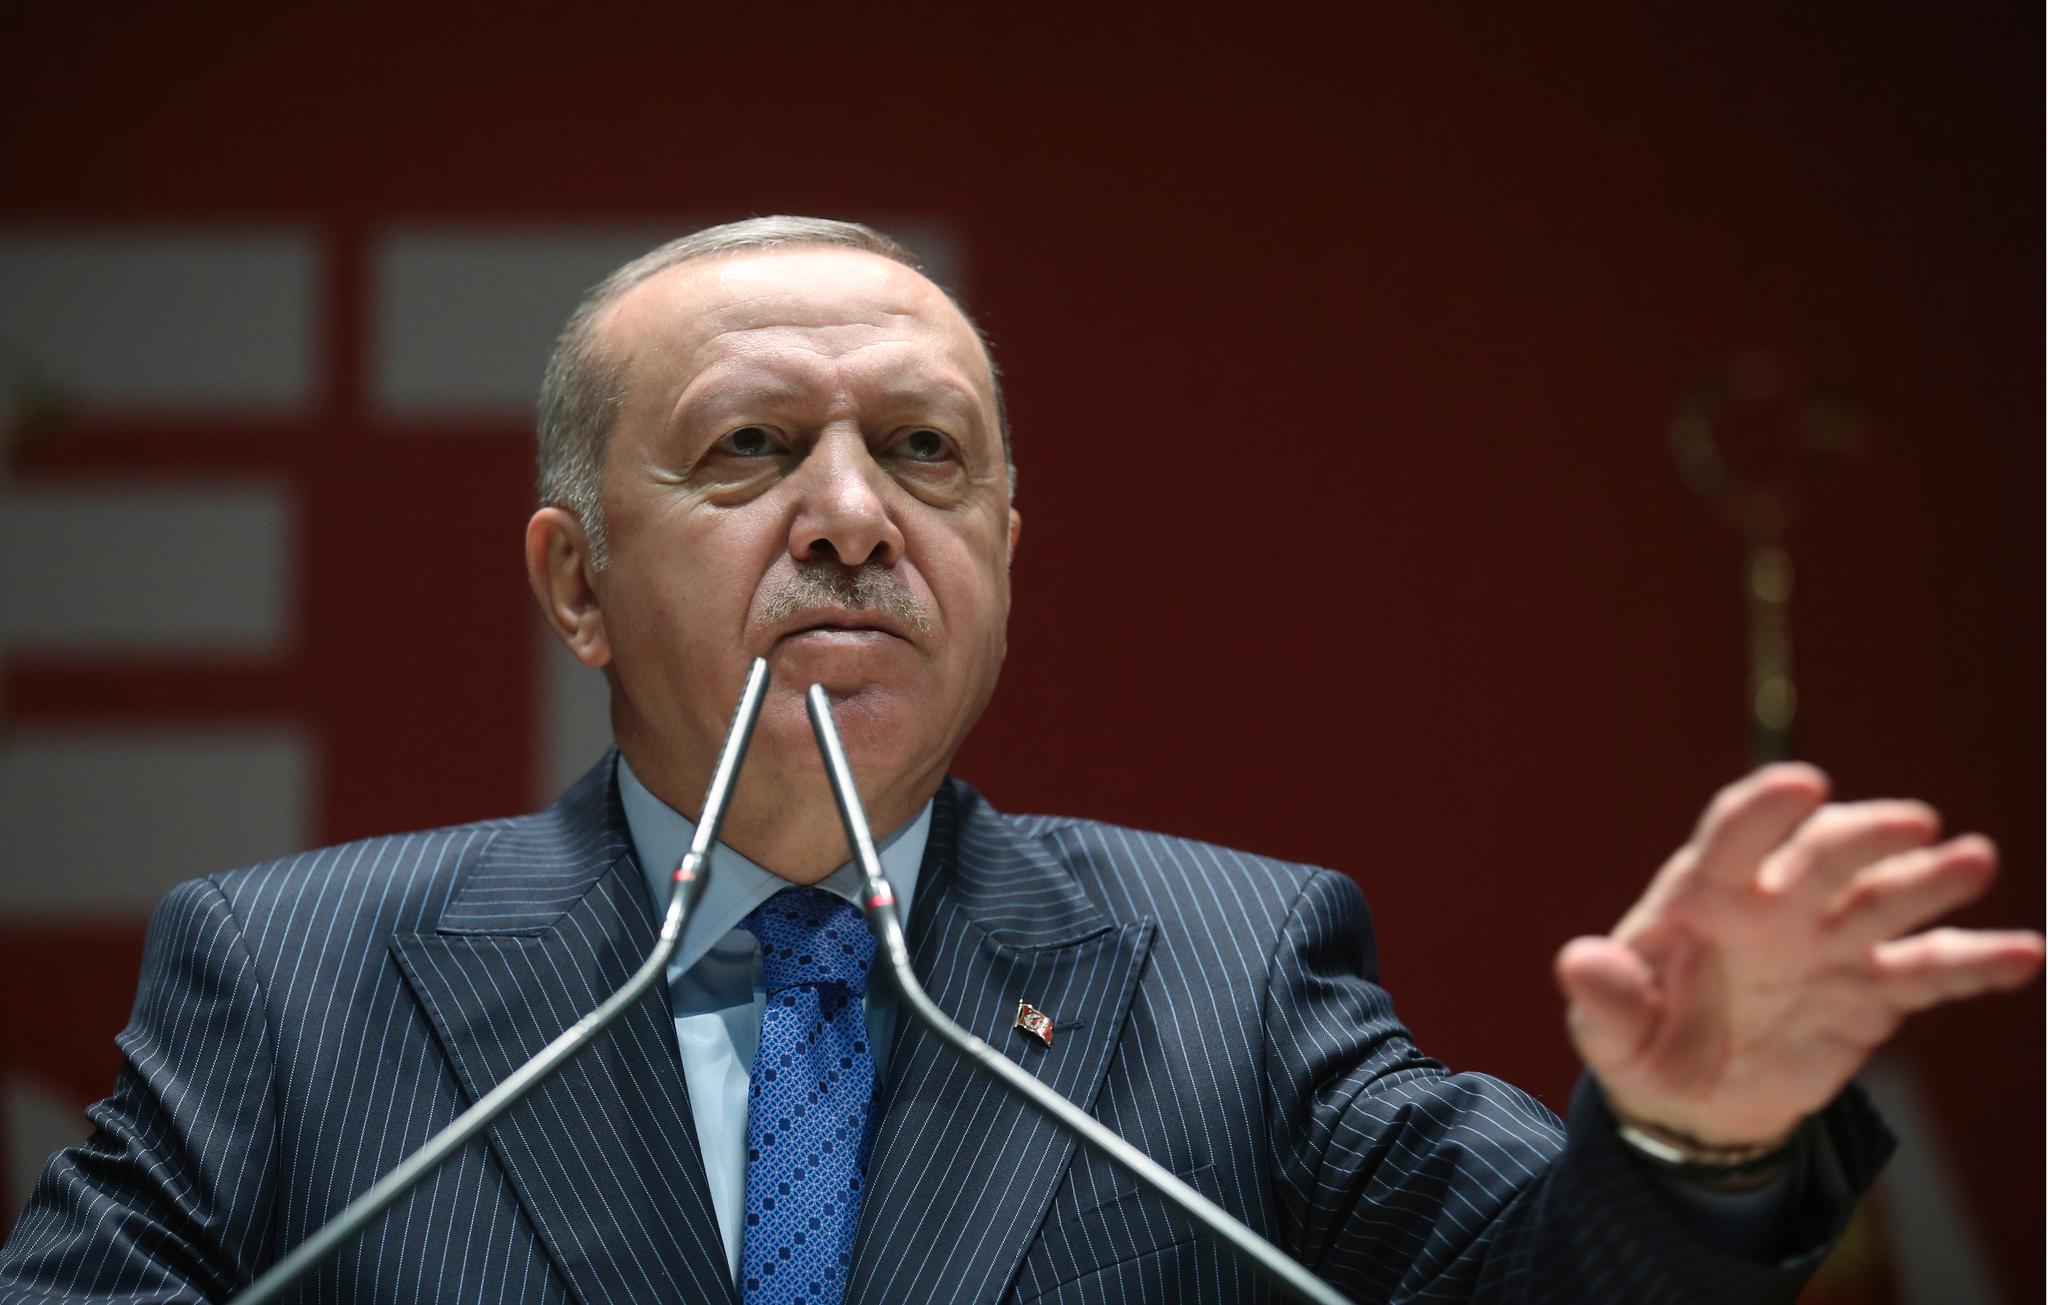 Tyrkias president Recep Tayyip Erdogan bekreftet lørdag at tyrkerne vil la migranter og flyktninger reise fritt mot grensene mot Europa.